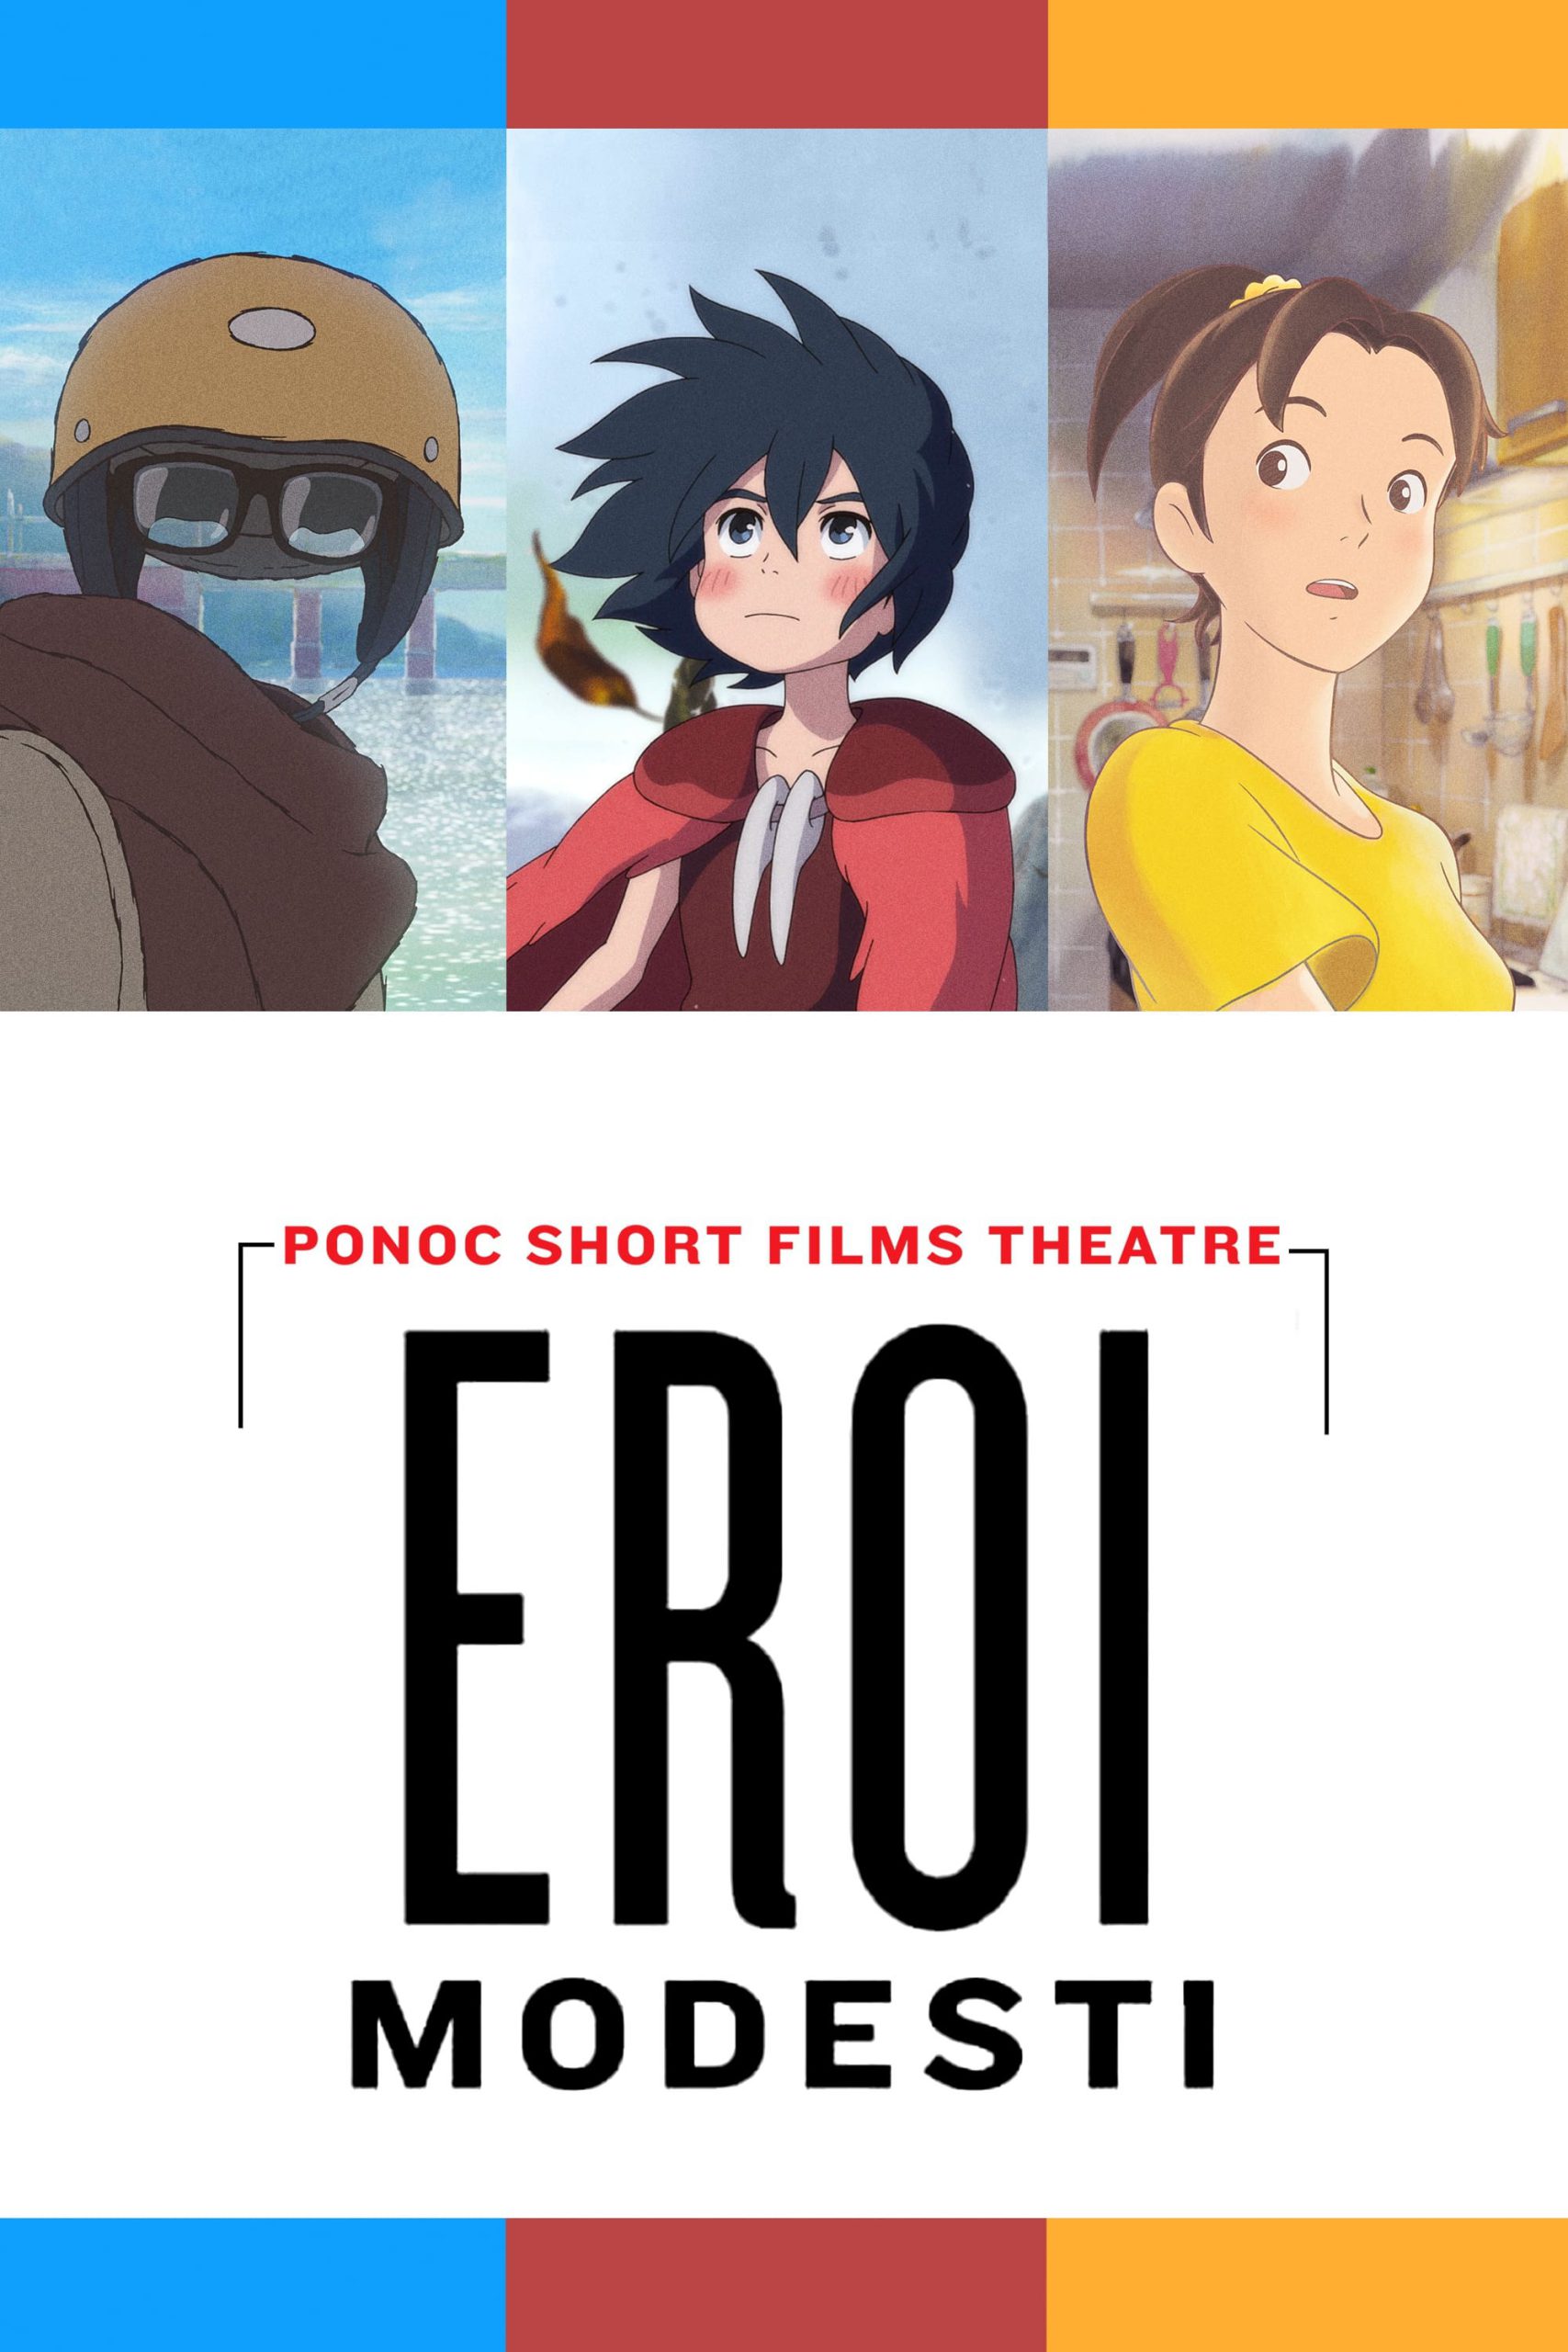 Eroi modesti: Ponoc Short Films Theatre [HD] (2018)